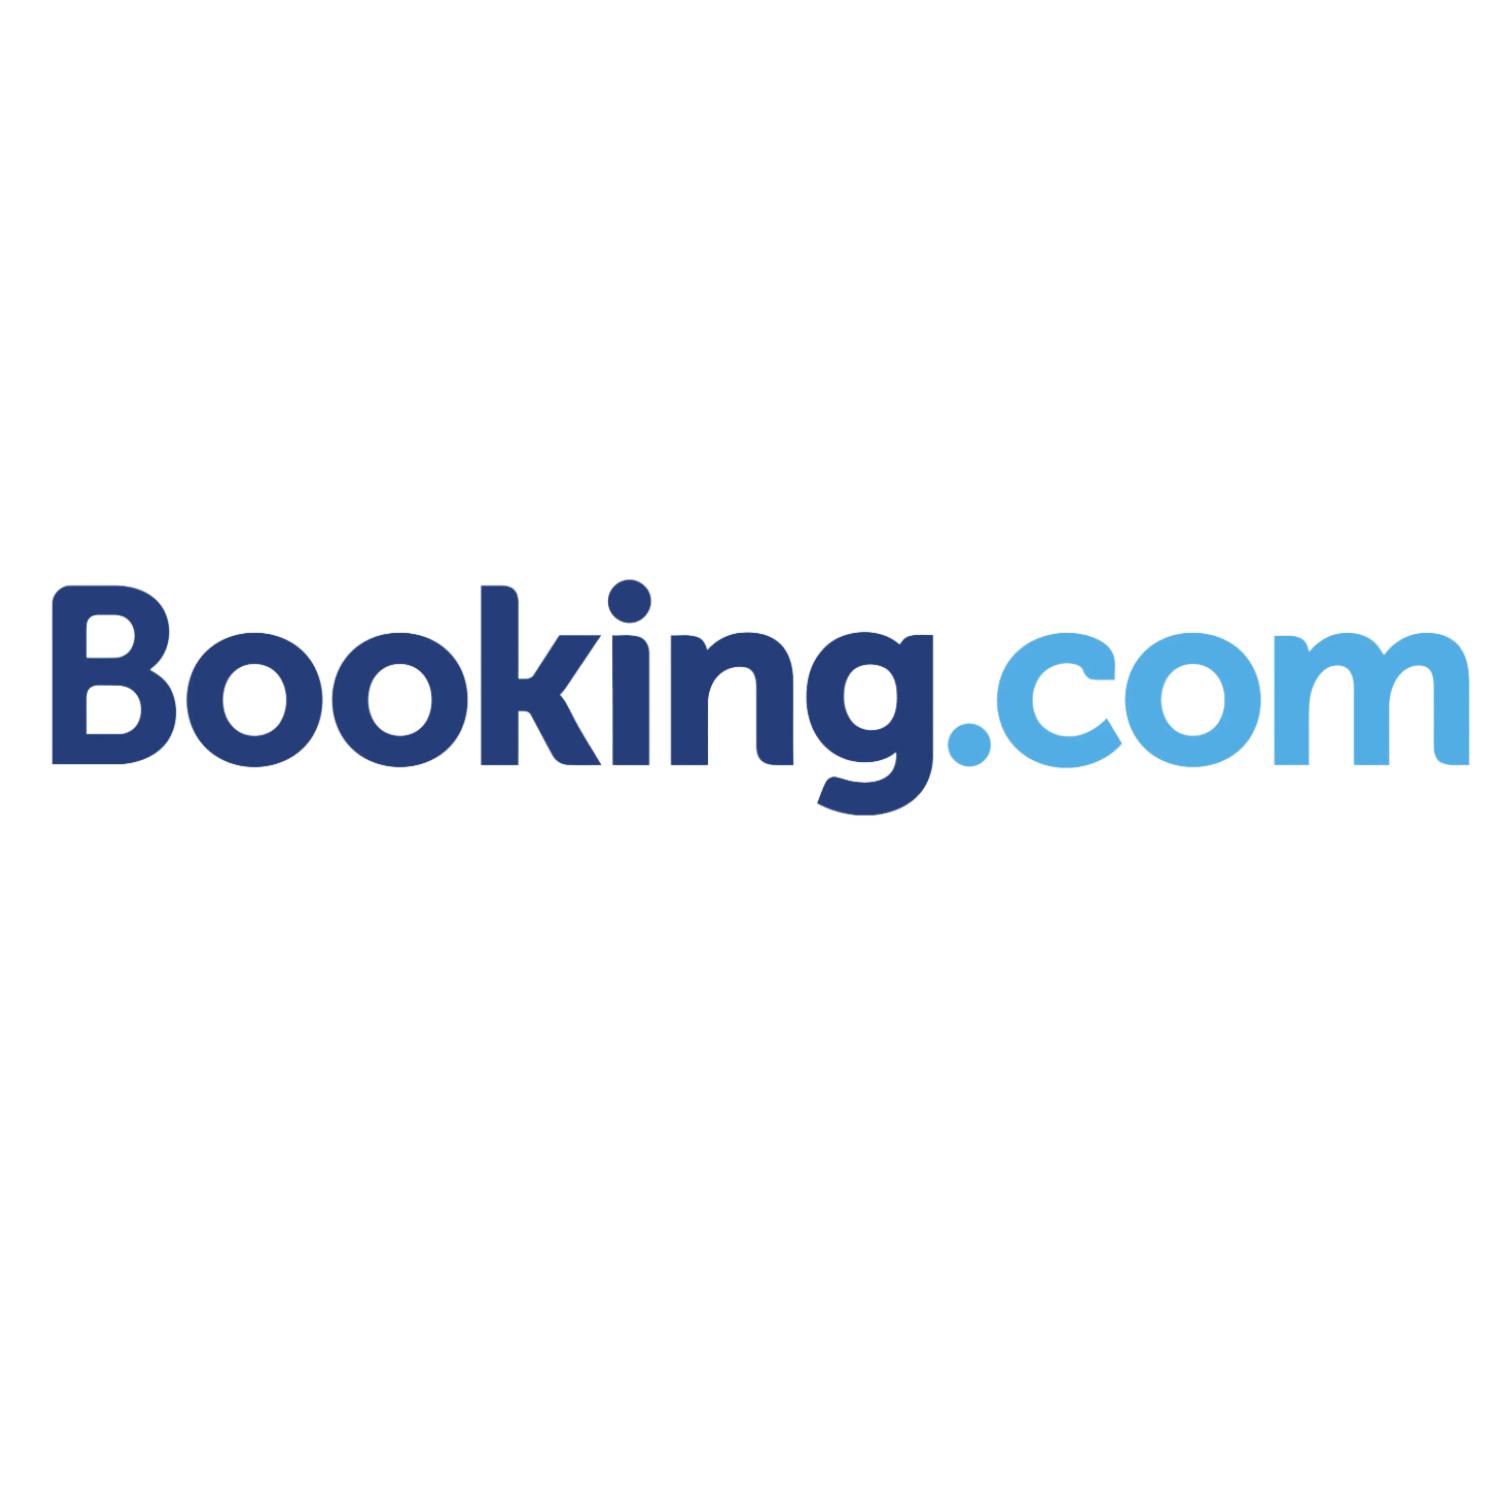 3. Booking.com